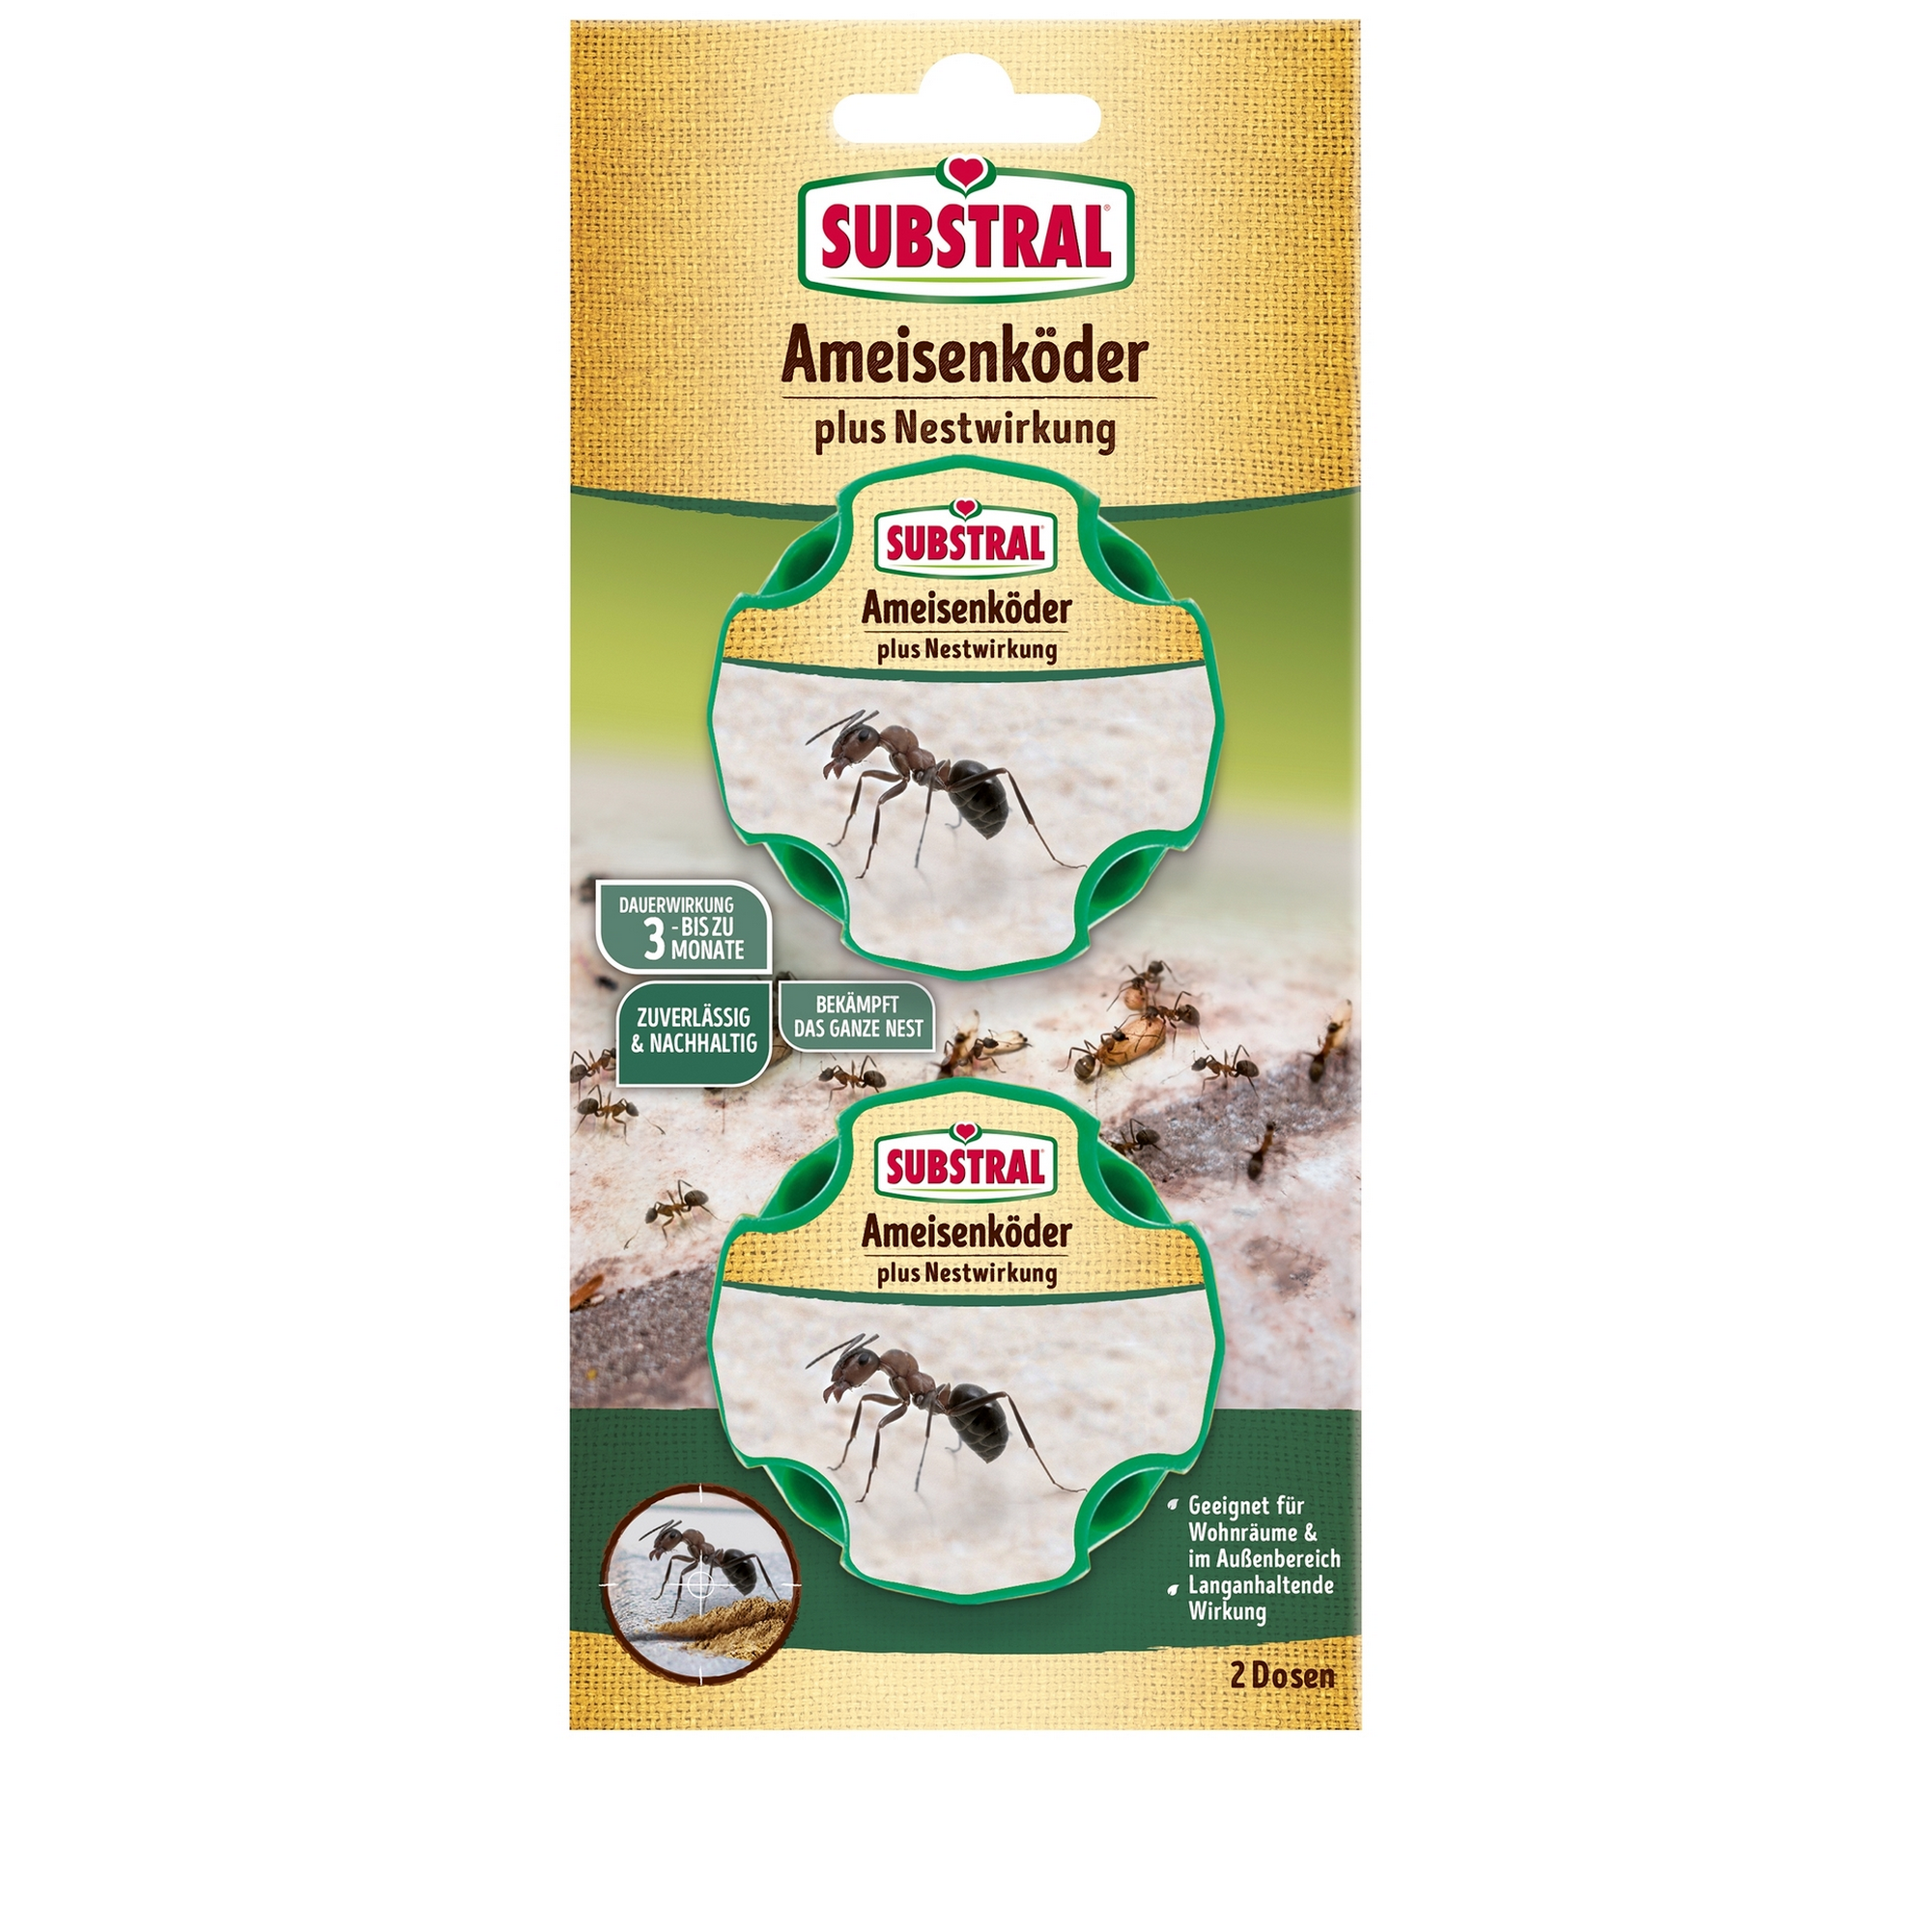 Ameisen-Köder plus Nestwirkung 2 Stück + product picture